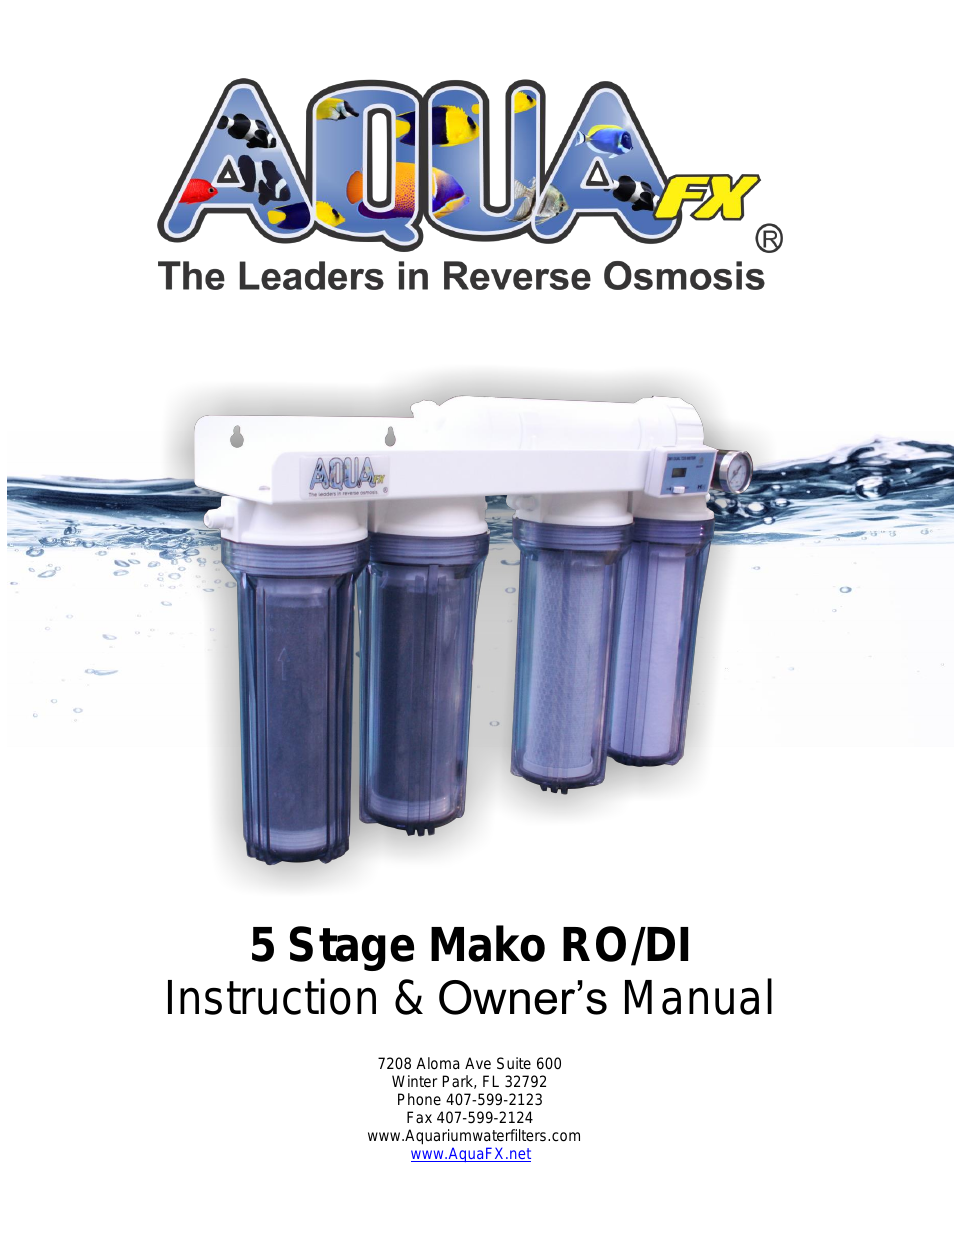 The AquaFX Mako RO/DI